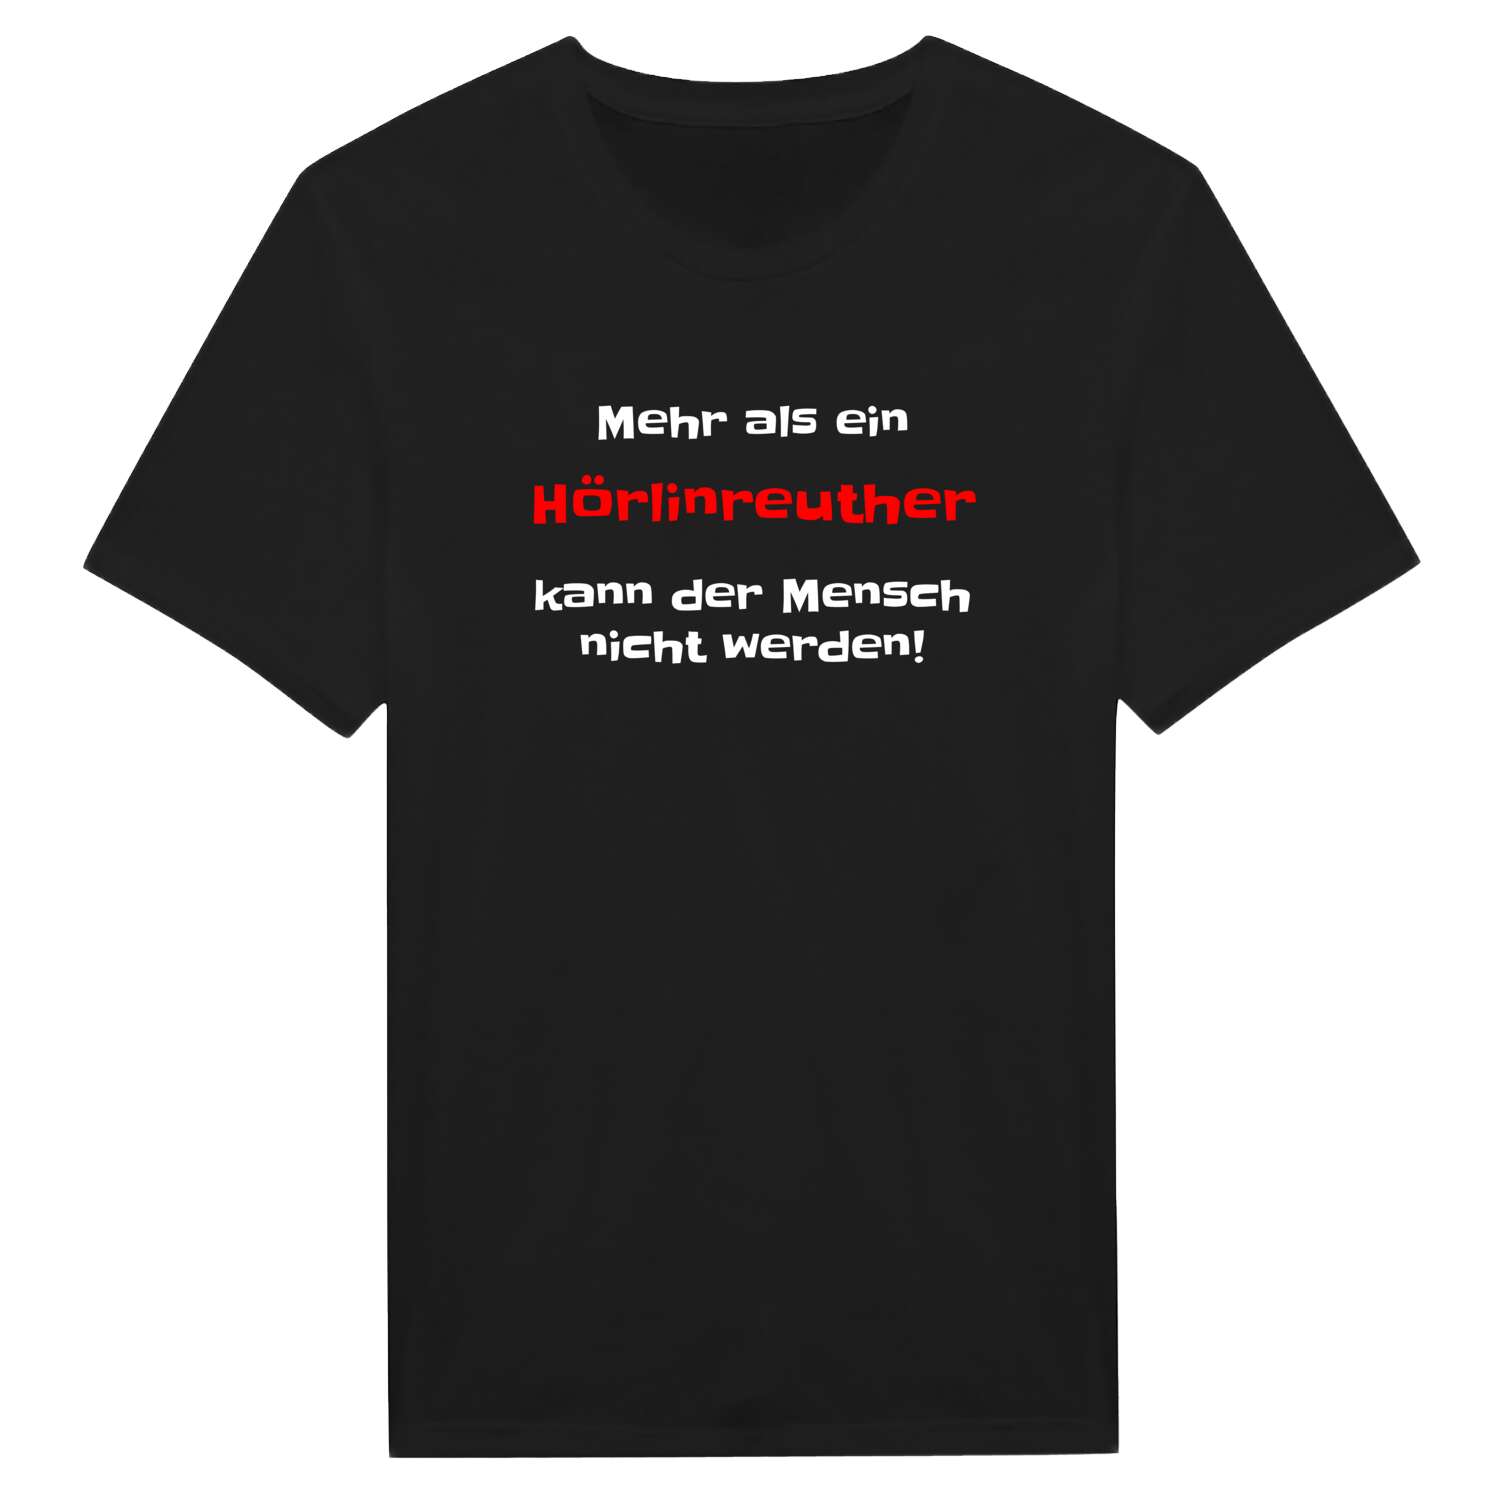 Hörlinreuth T-Shirt »Mehr als ein«